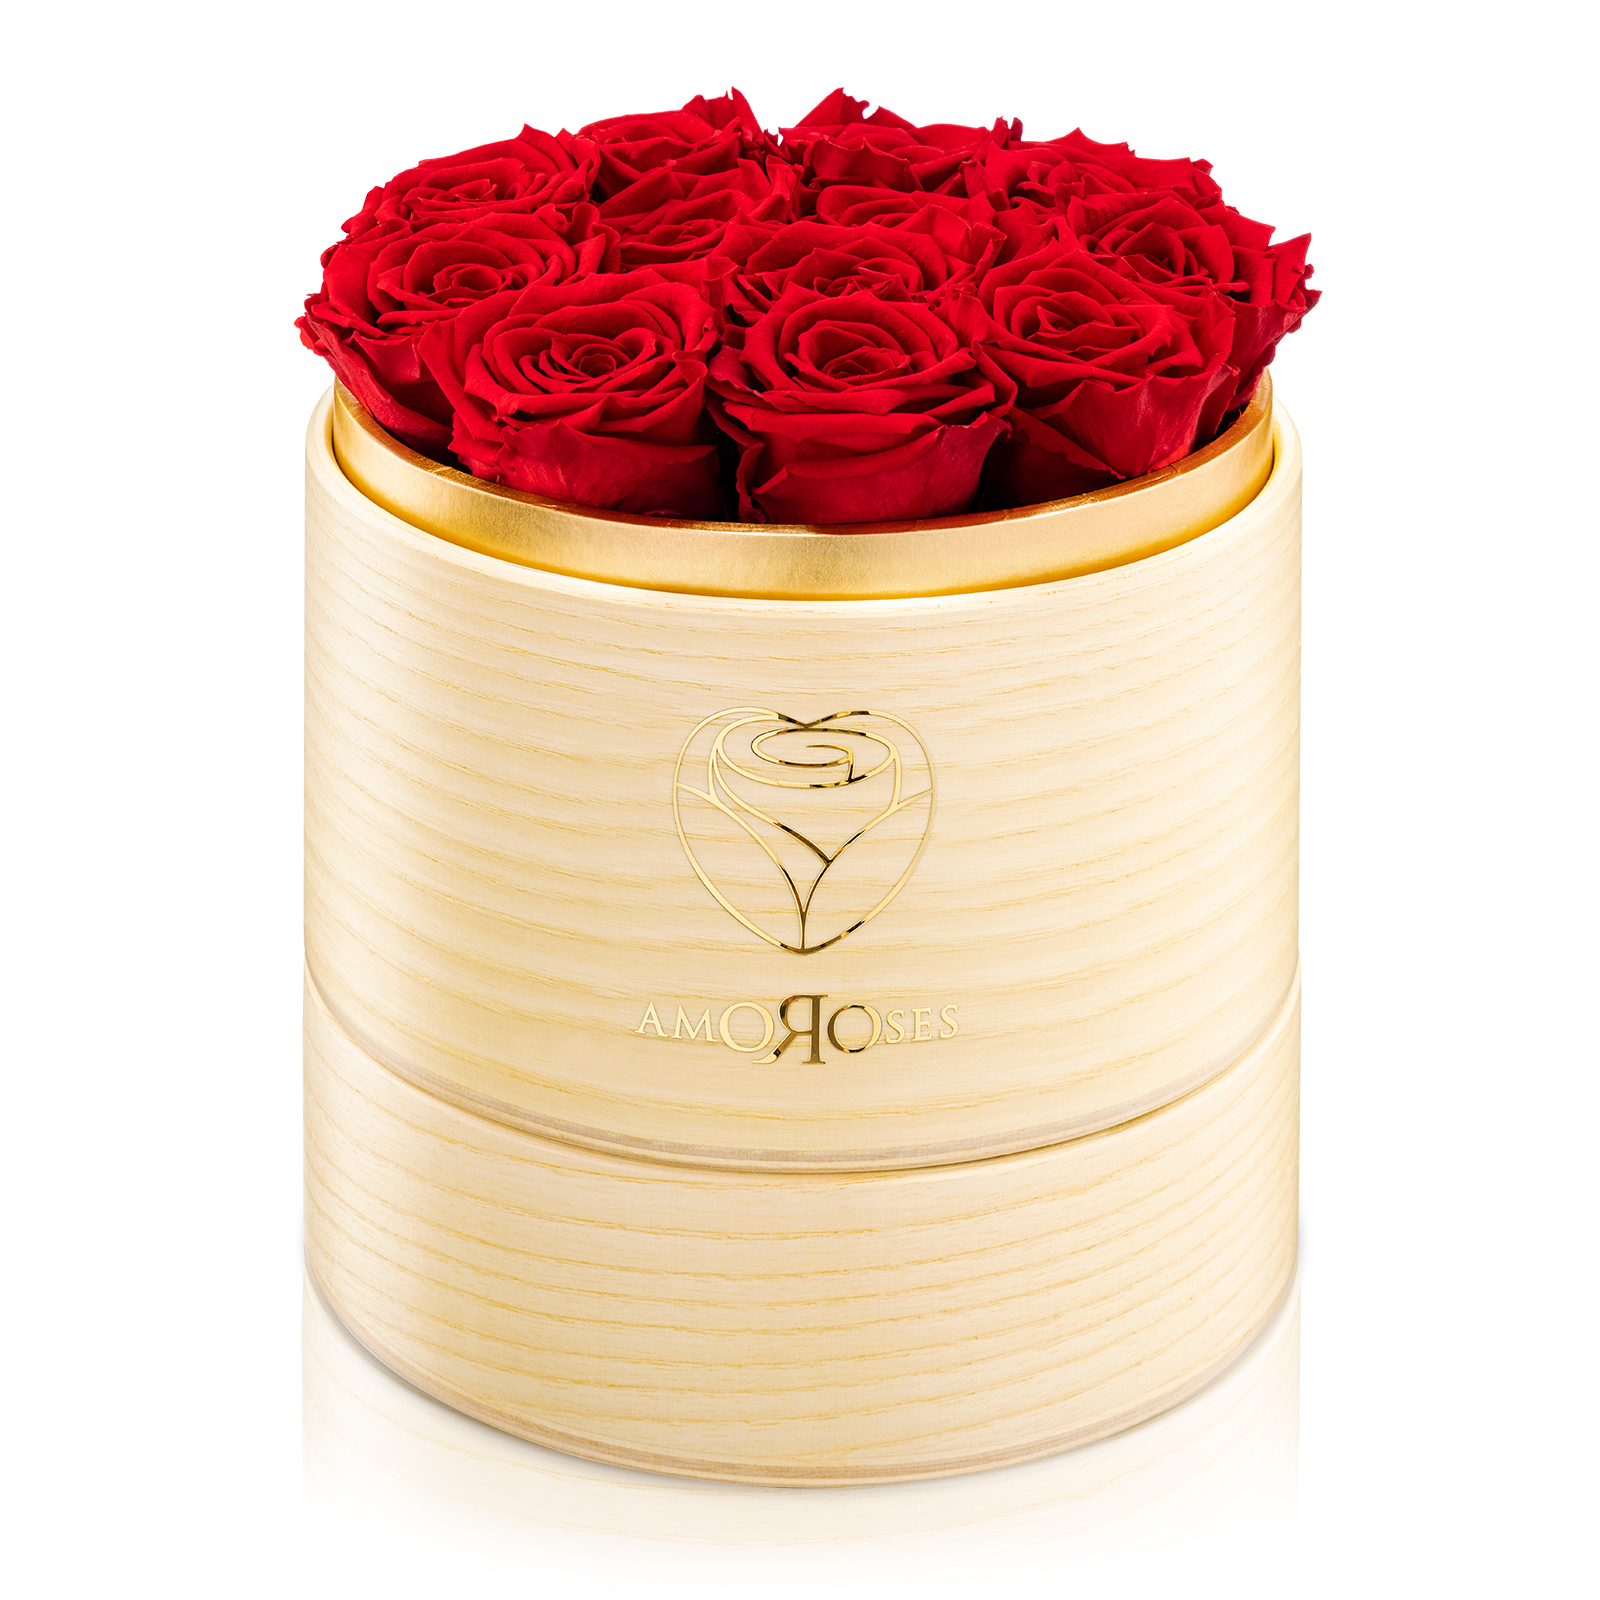 Amoroses SUPERIOR - Scatola in legno naturale fatta a mano con 12 rose rosse stabilizzate